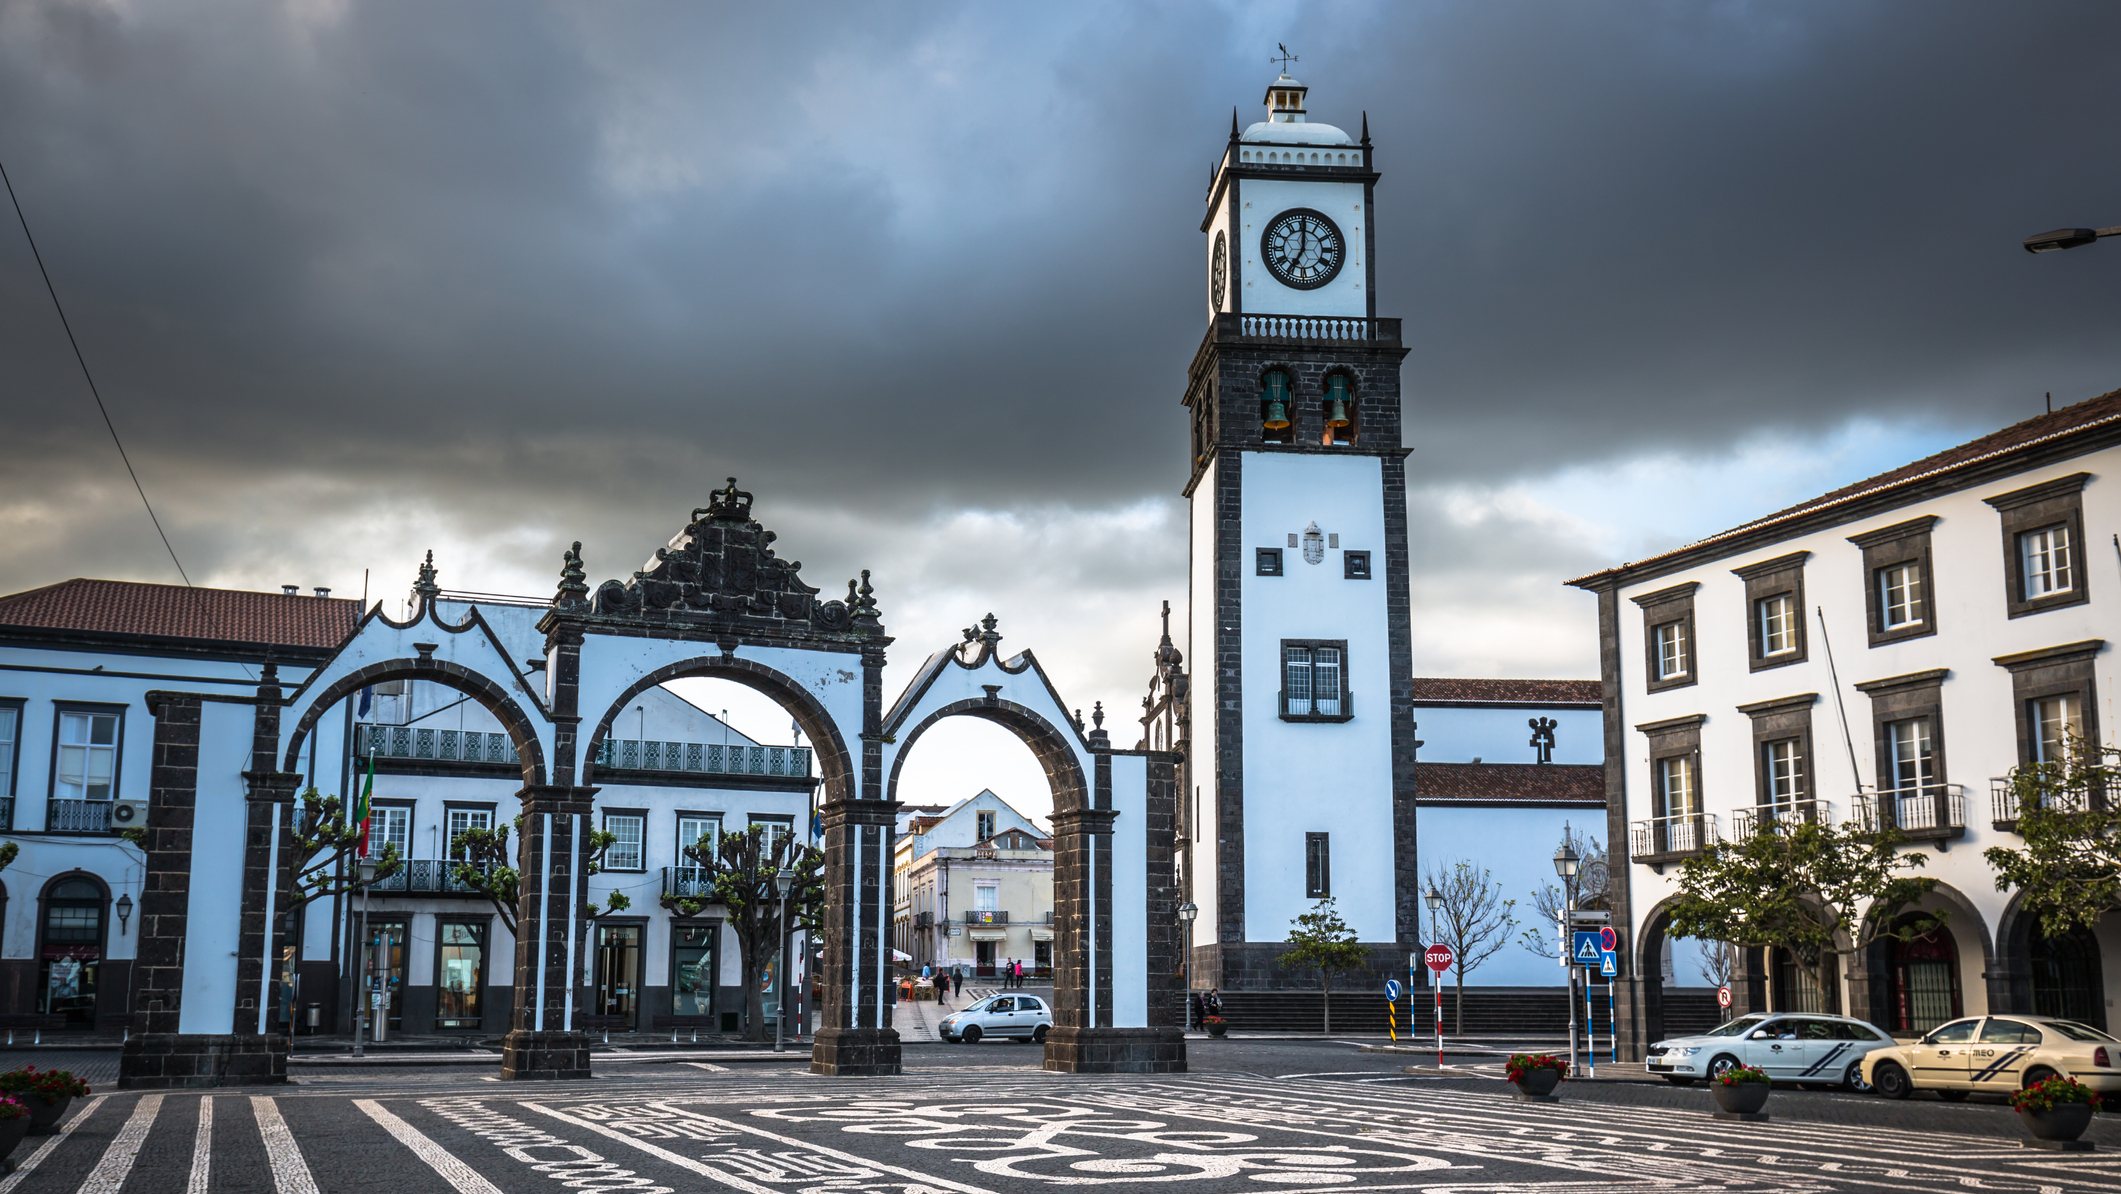 Ponta Delgada, Azores, Portugal - April 20, 2015